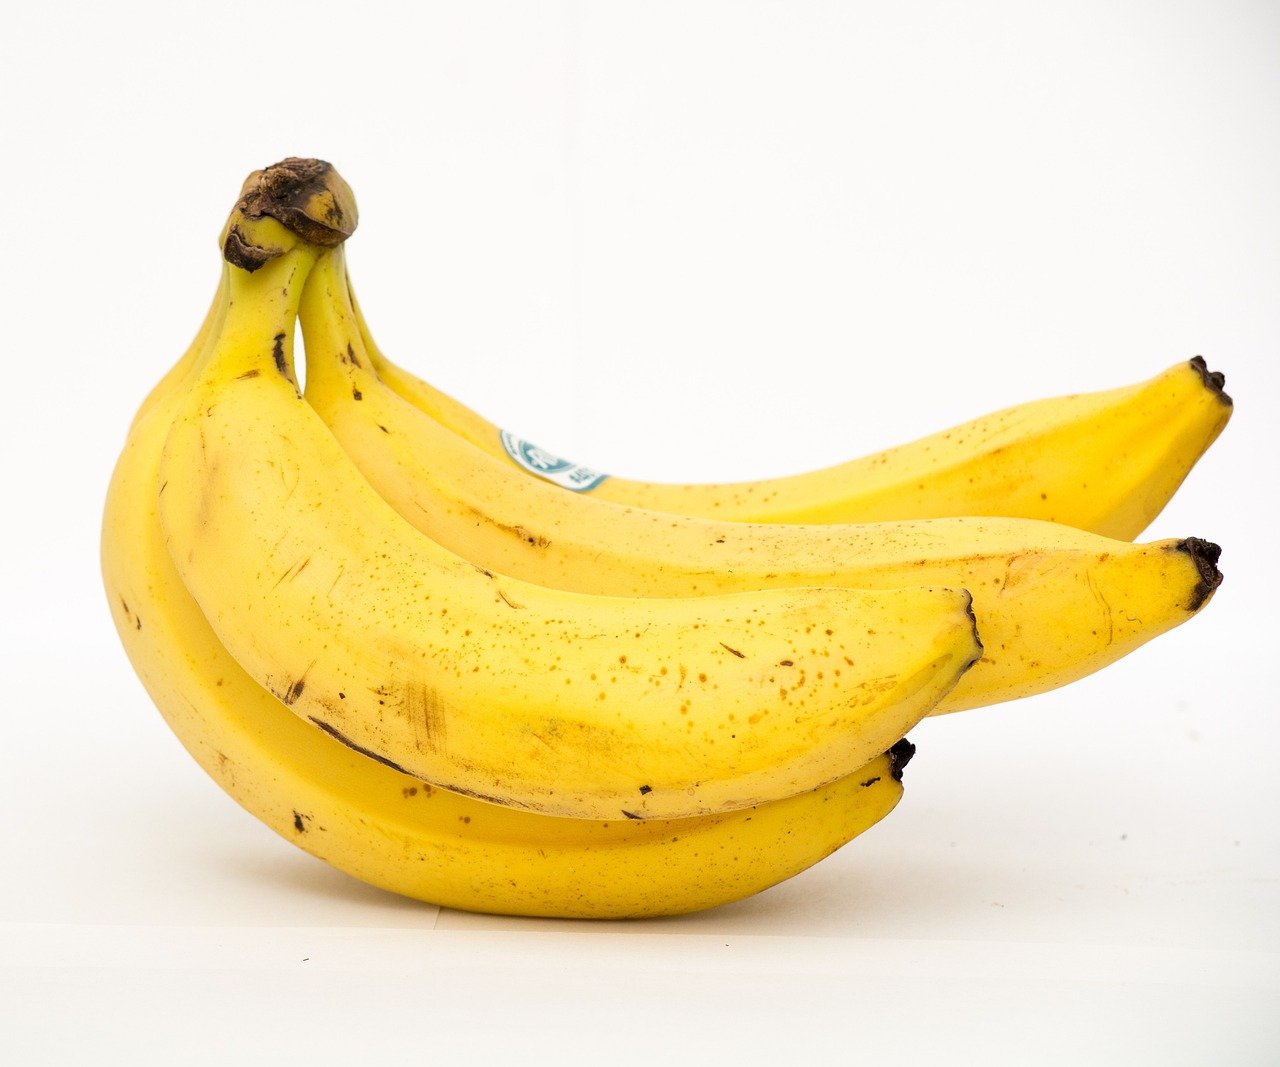 Koliko šećera ima u banani